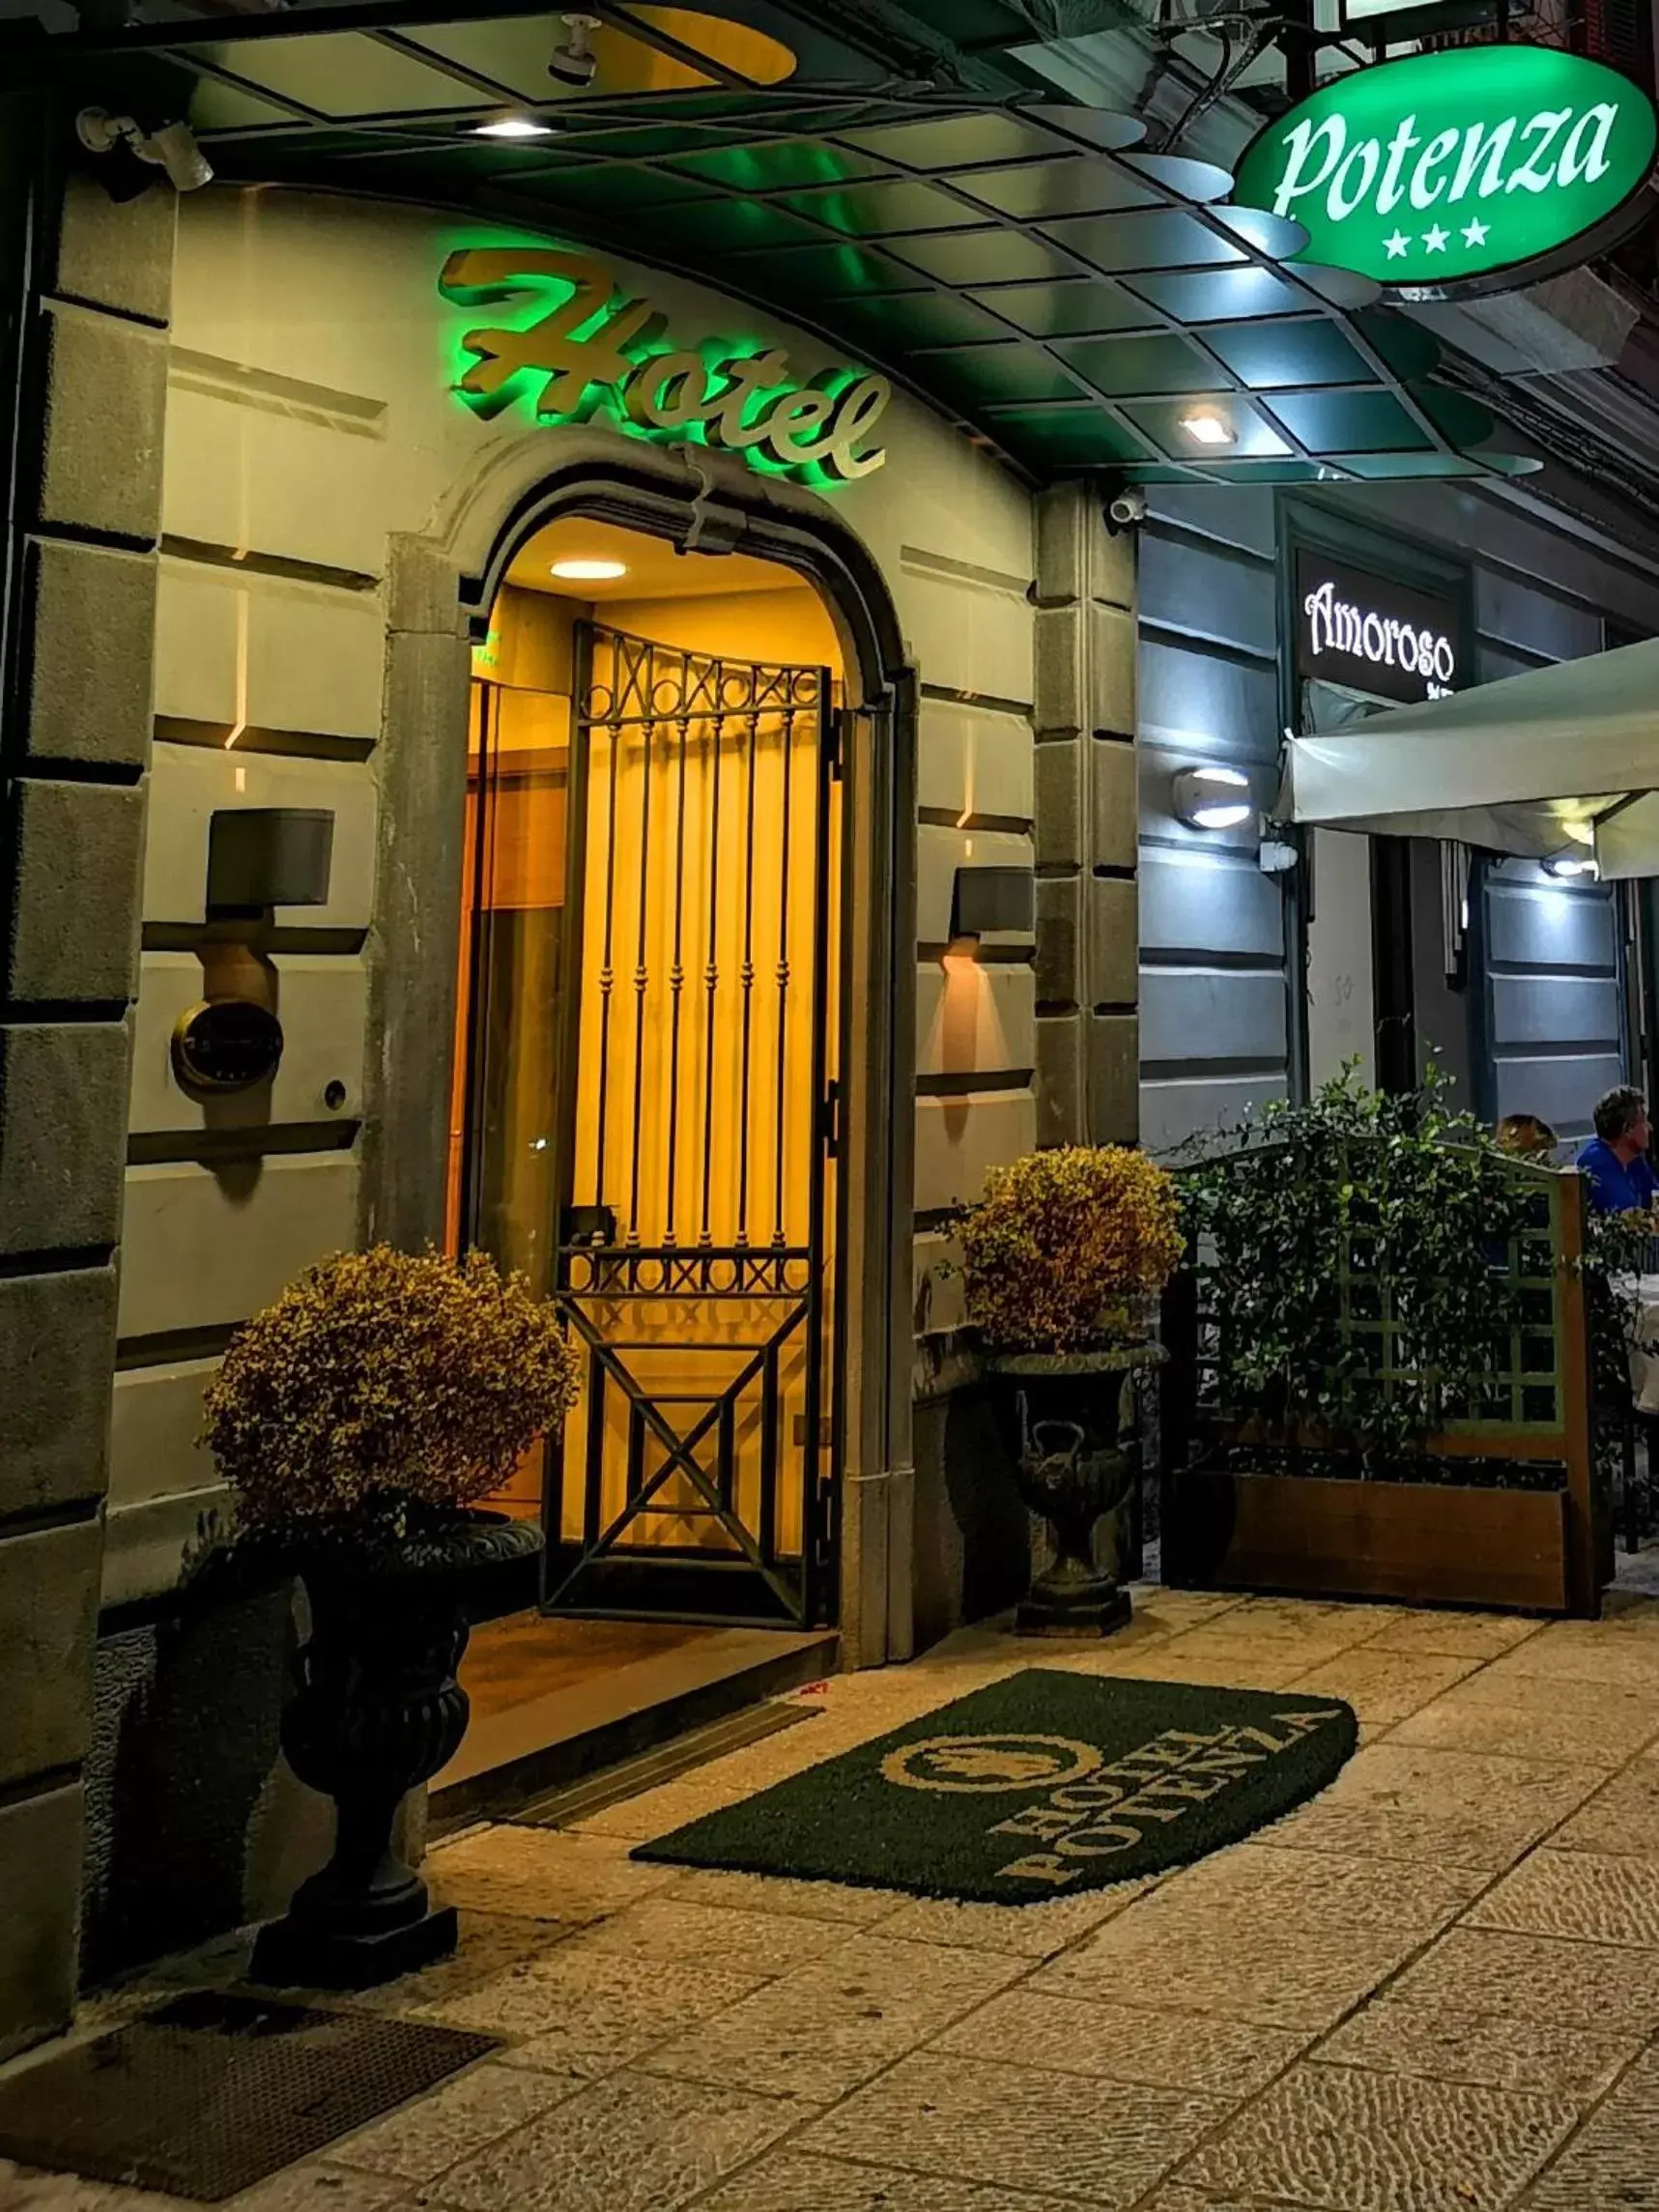 Facade/entrance in Hotel Potenza